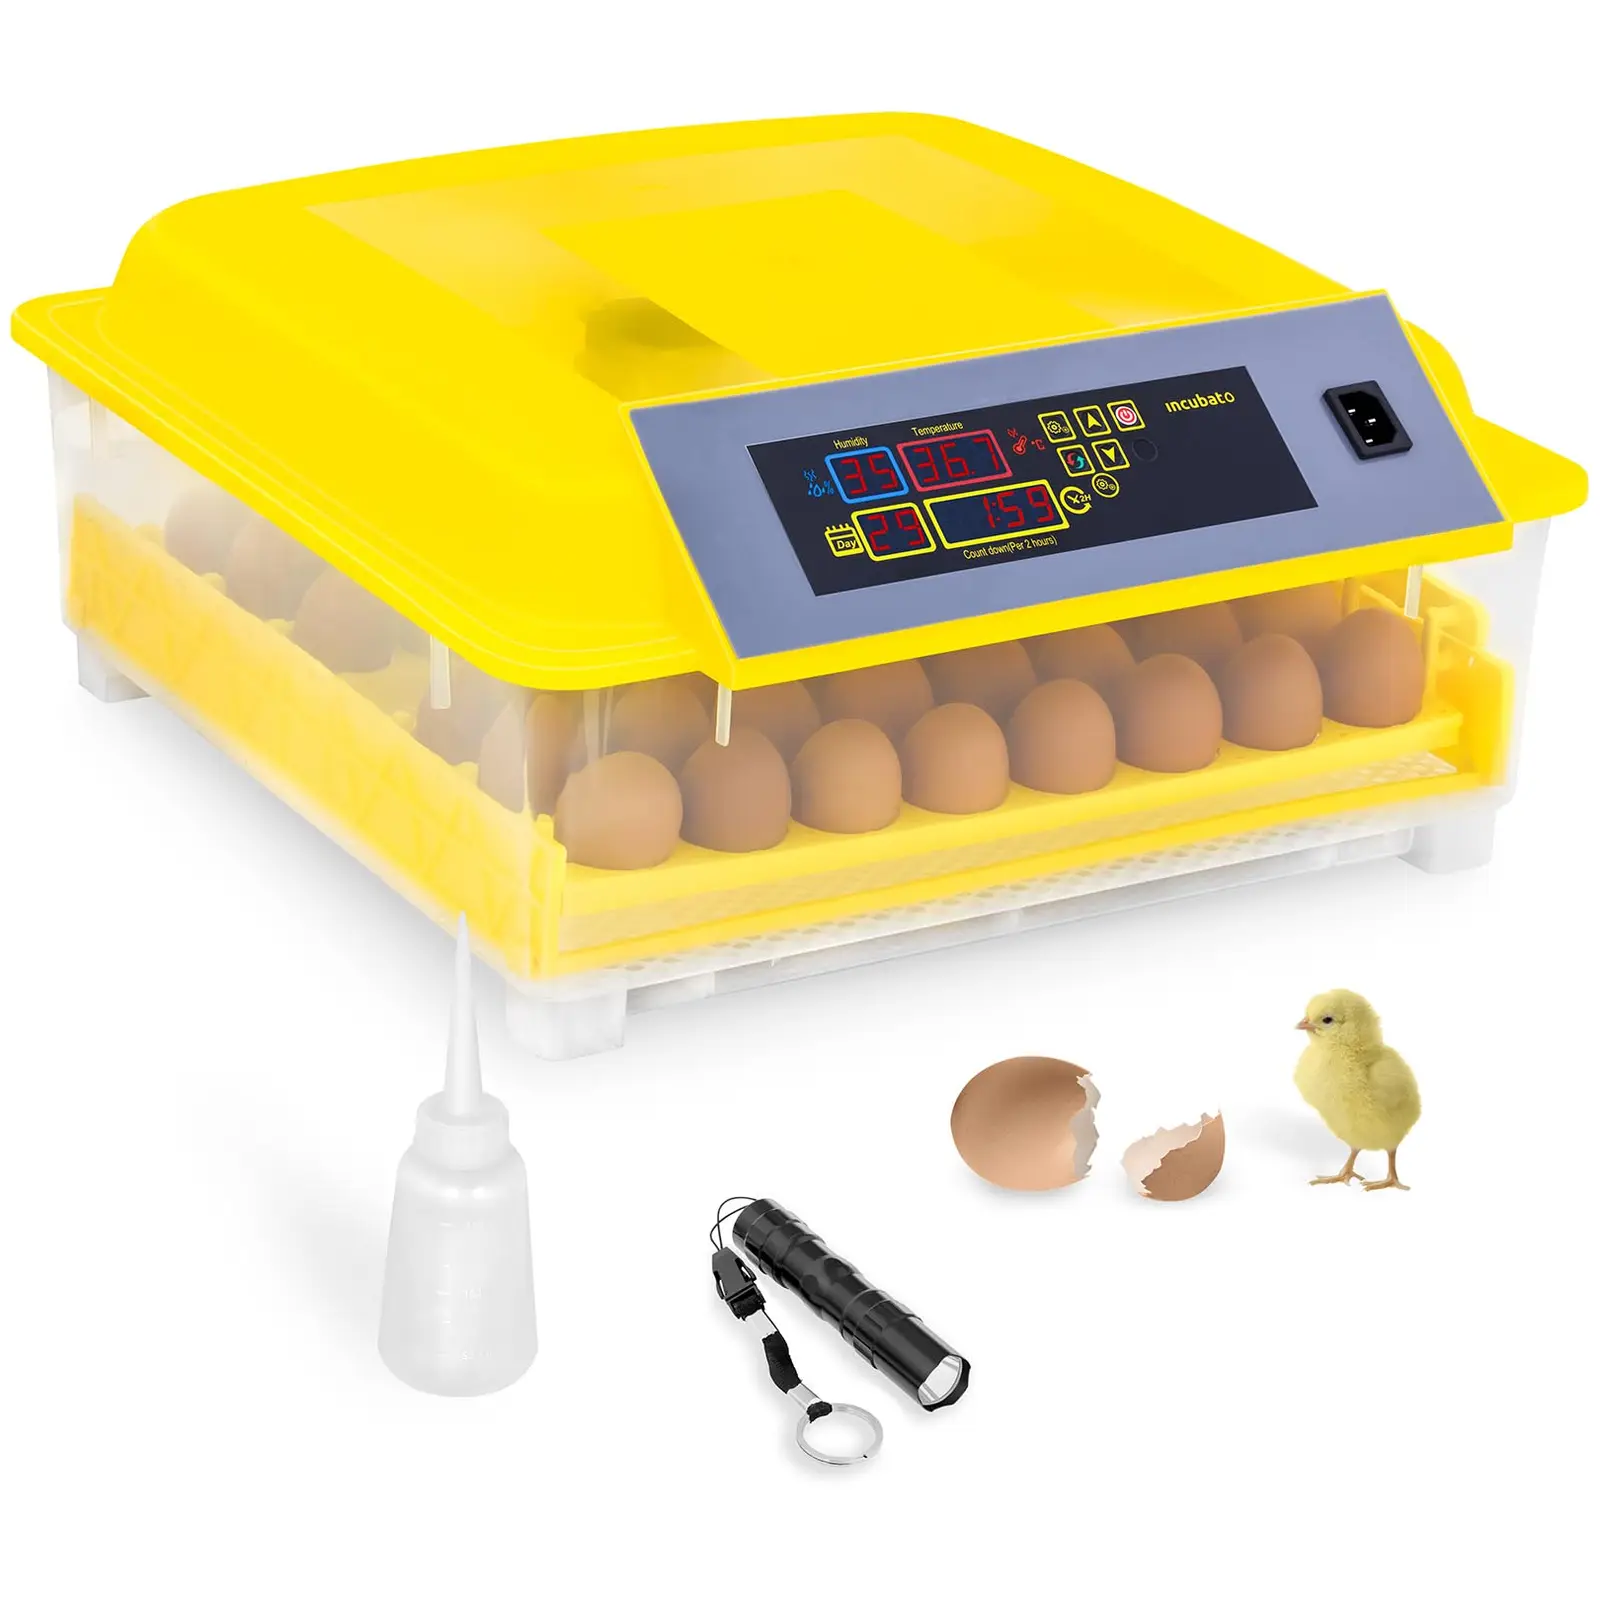 B-Ware Brutapparat - 48 Eier - inklusive Schierlampe und Wasserspender - vollautomatisch